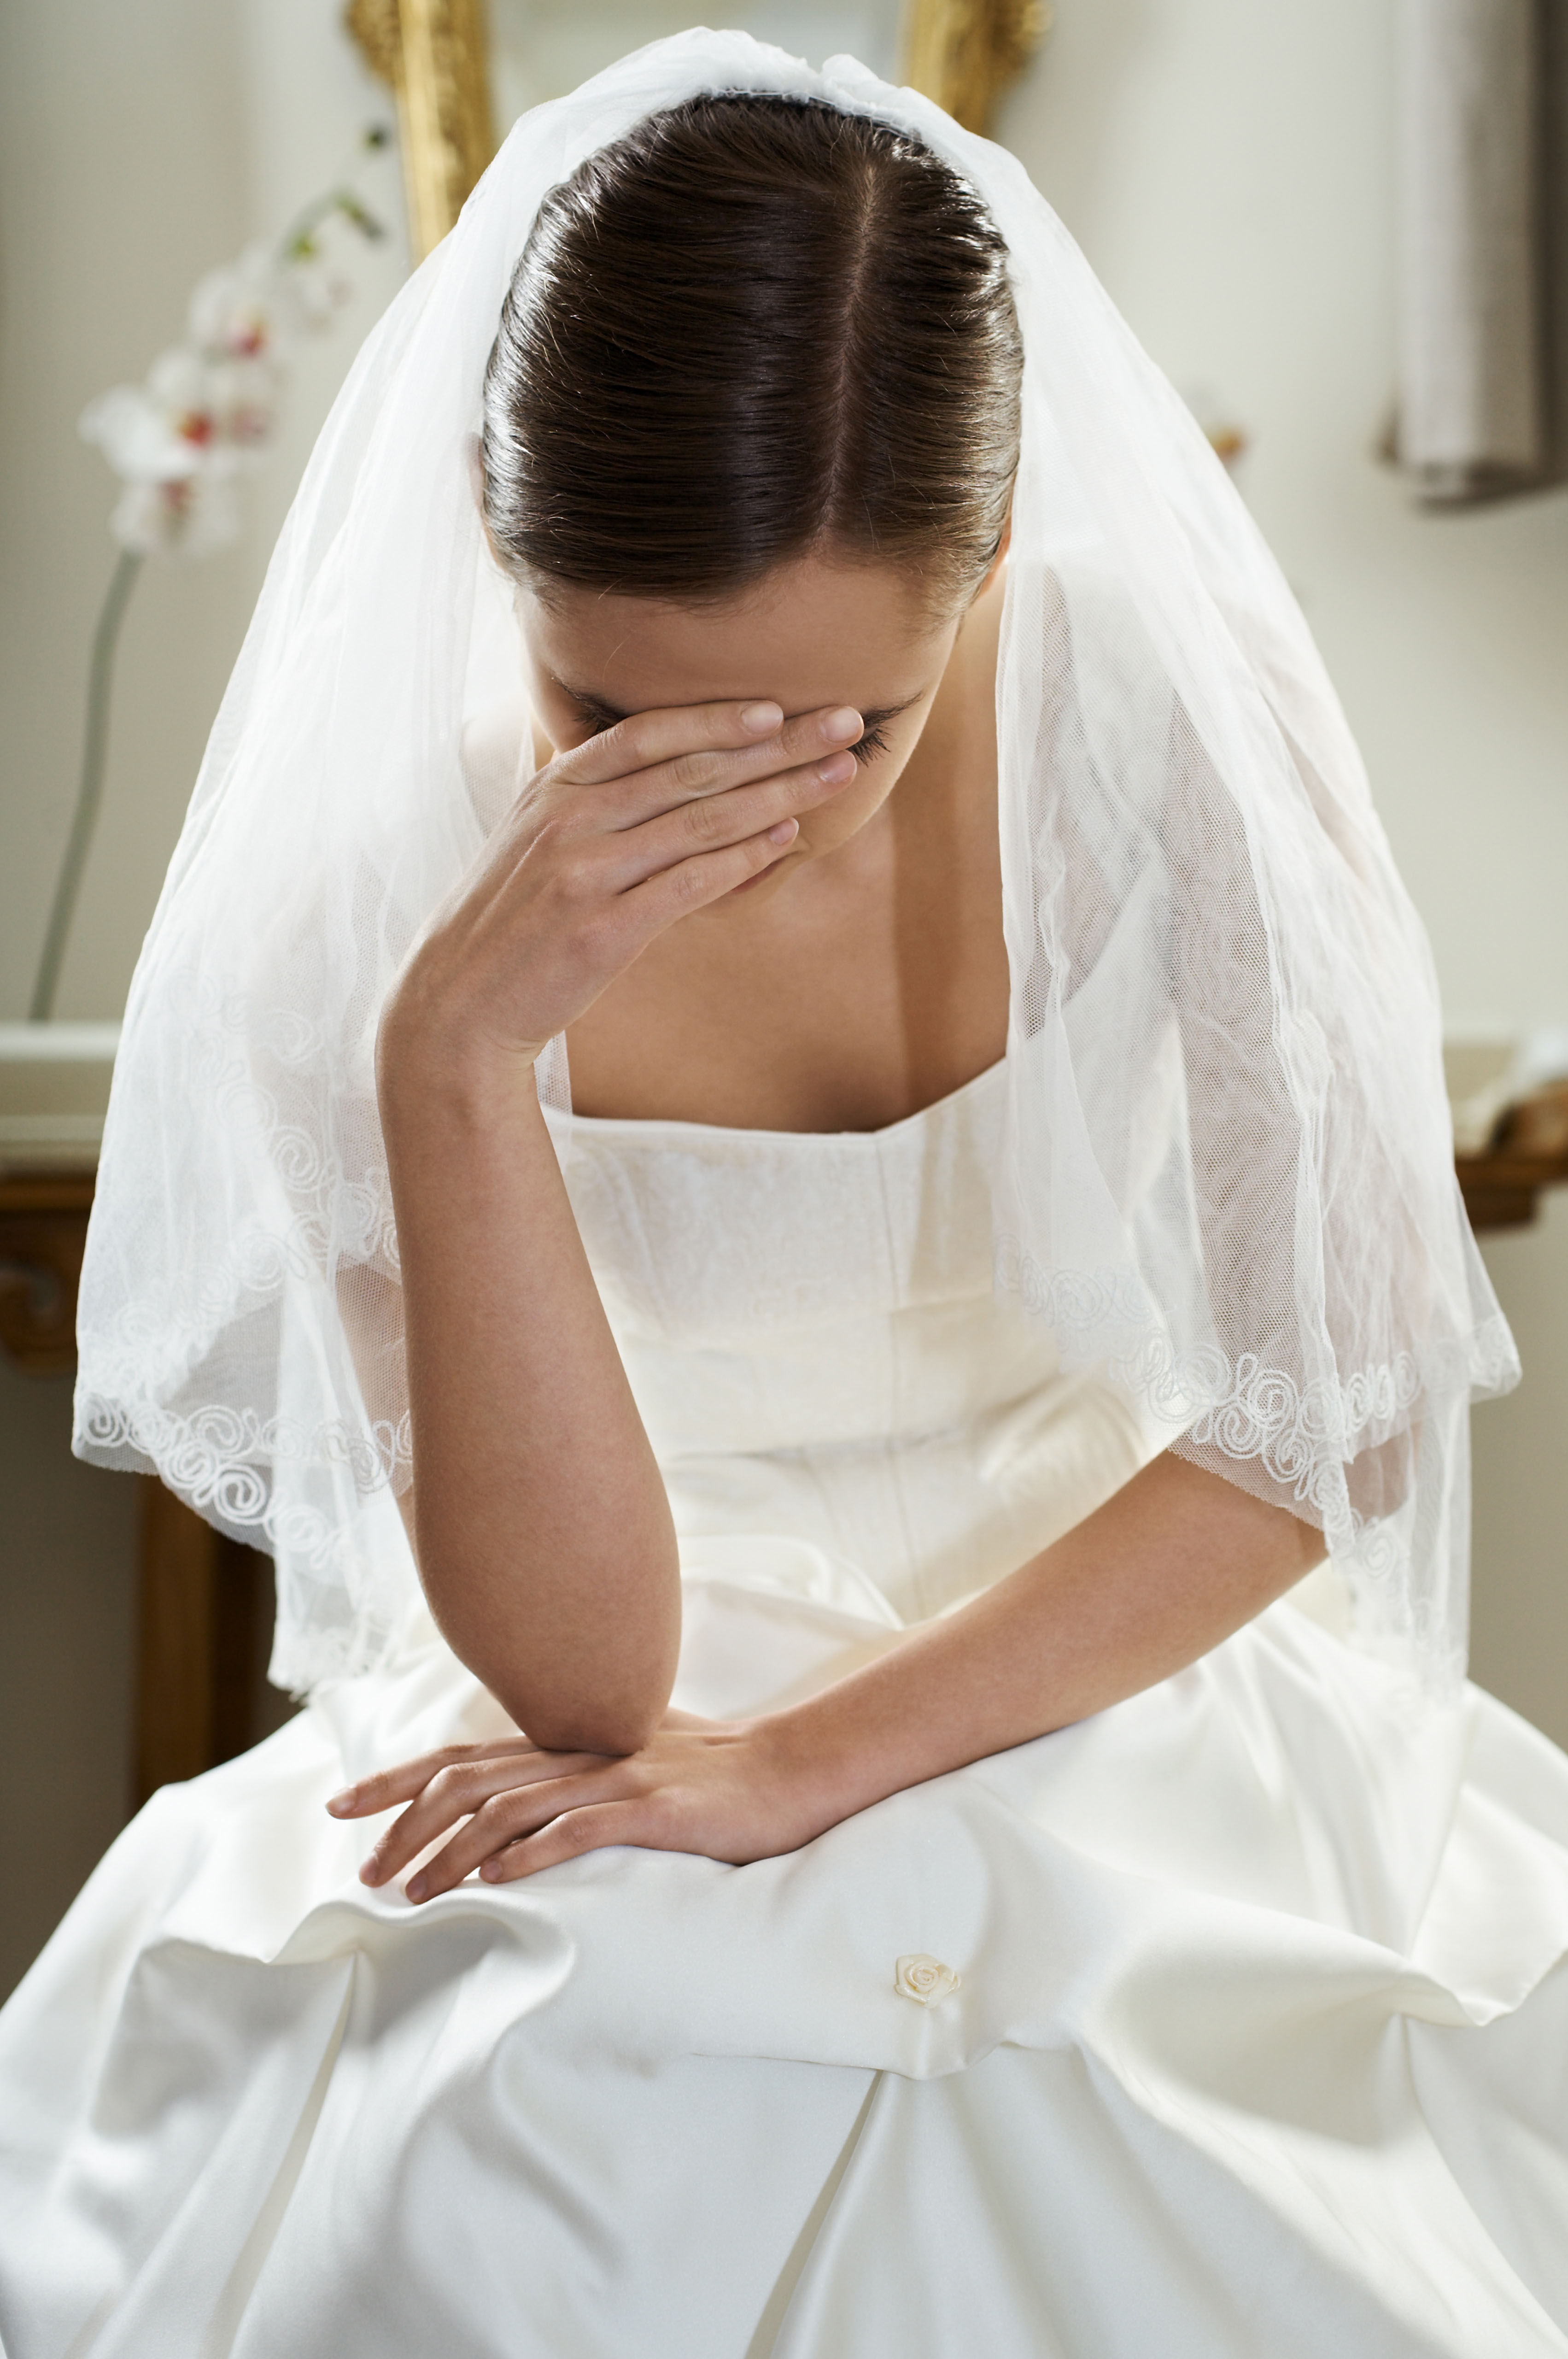 Leider wissen wir nicht, wie die Braut auf das Kleid reagiert hat